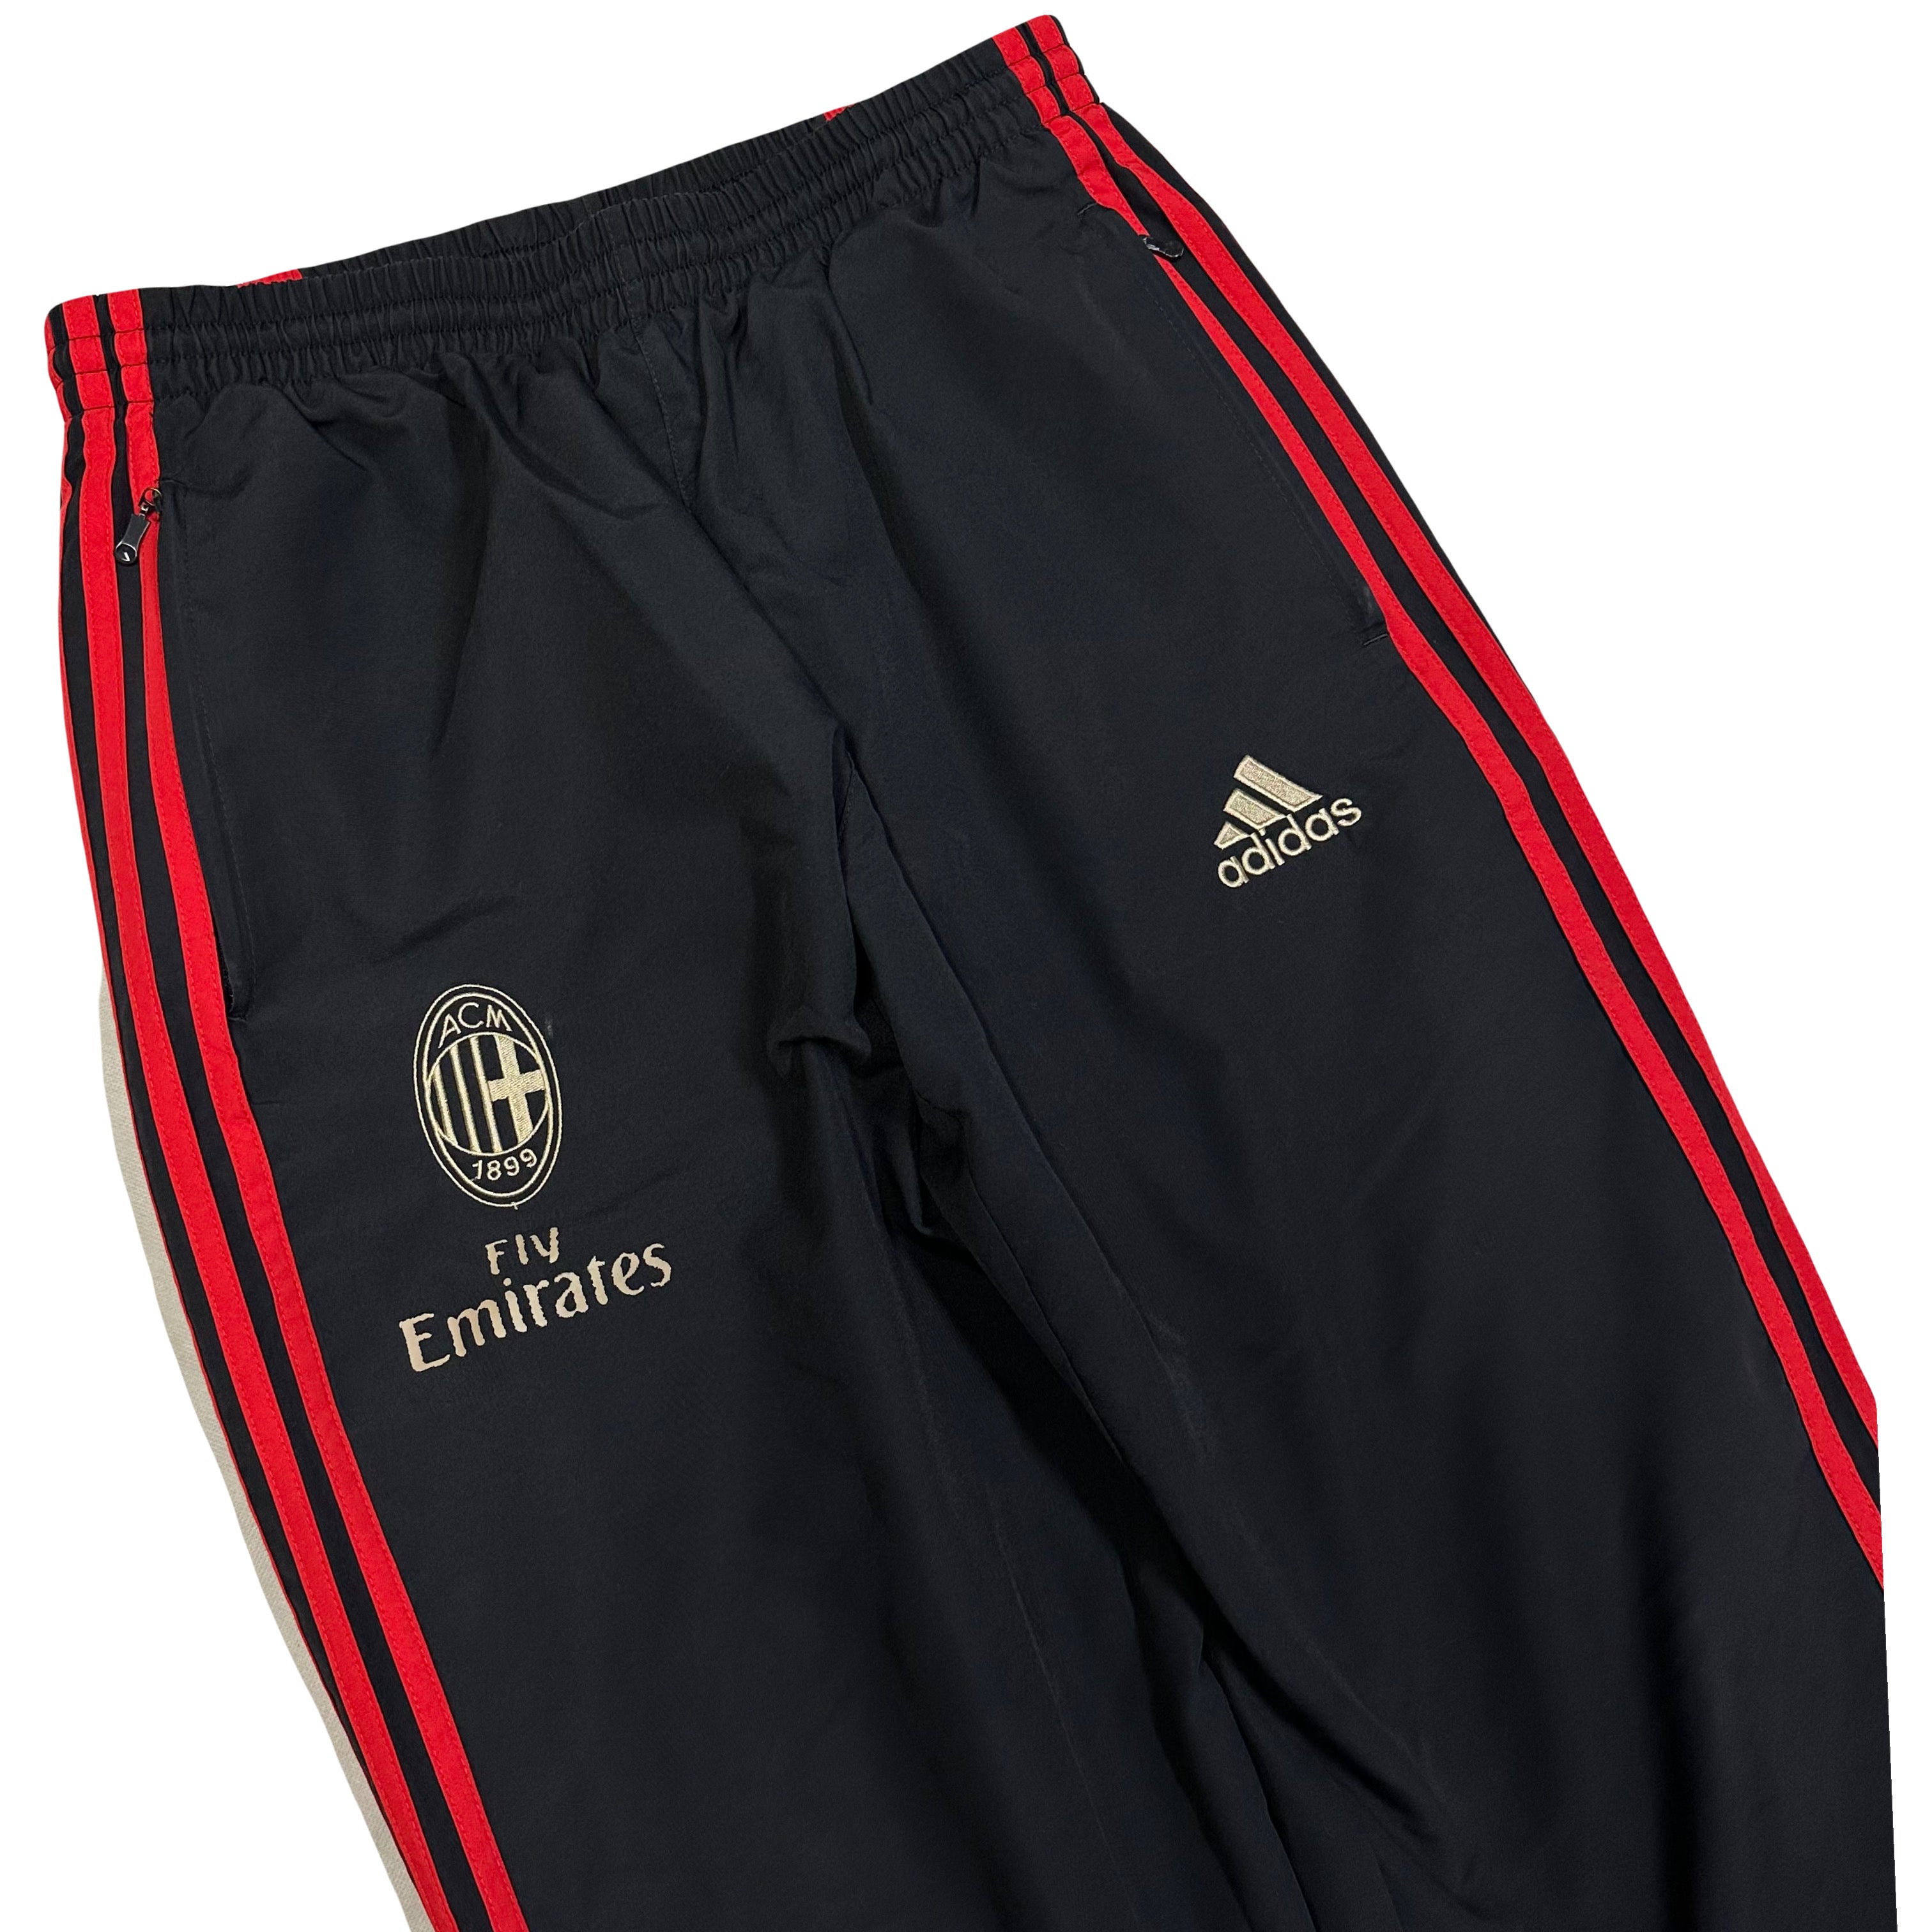 Adidas AC Milan 2011/12 Tracksuit In Black & Red ( M )